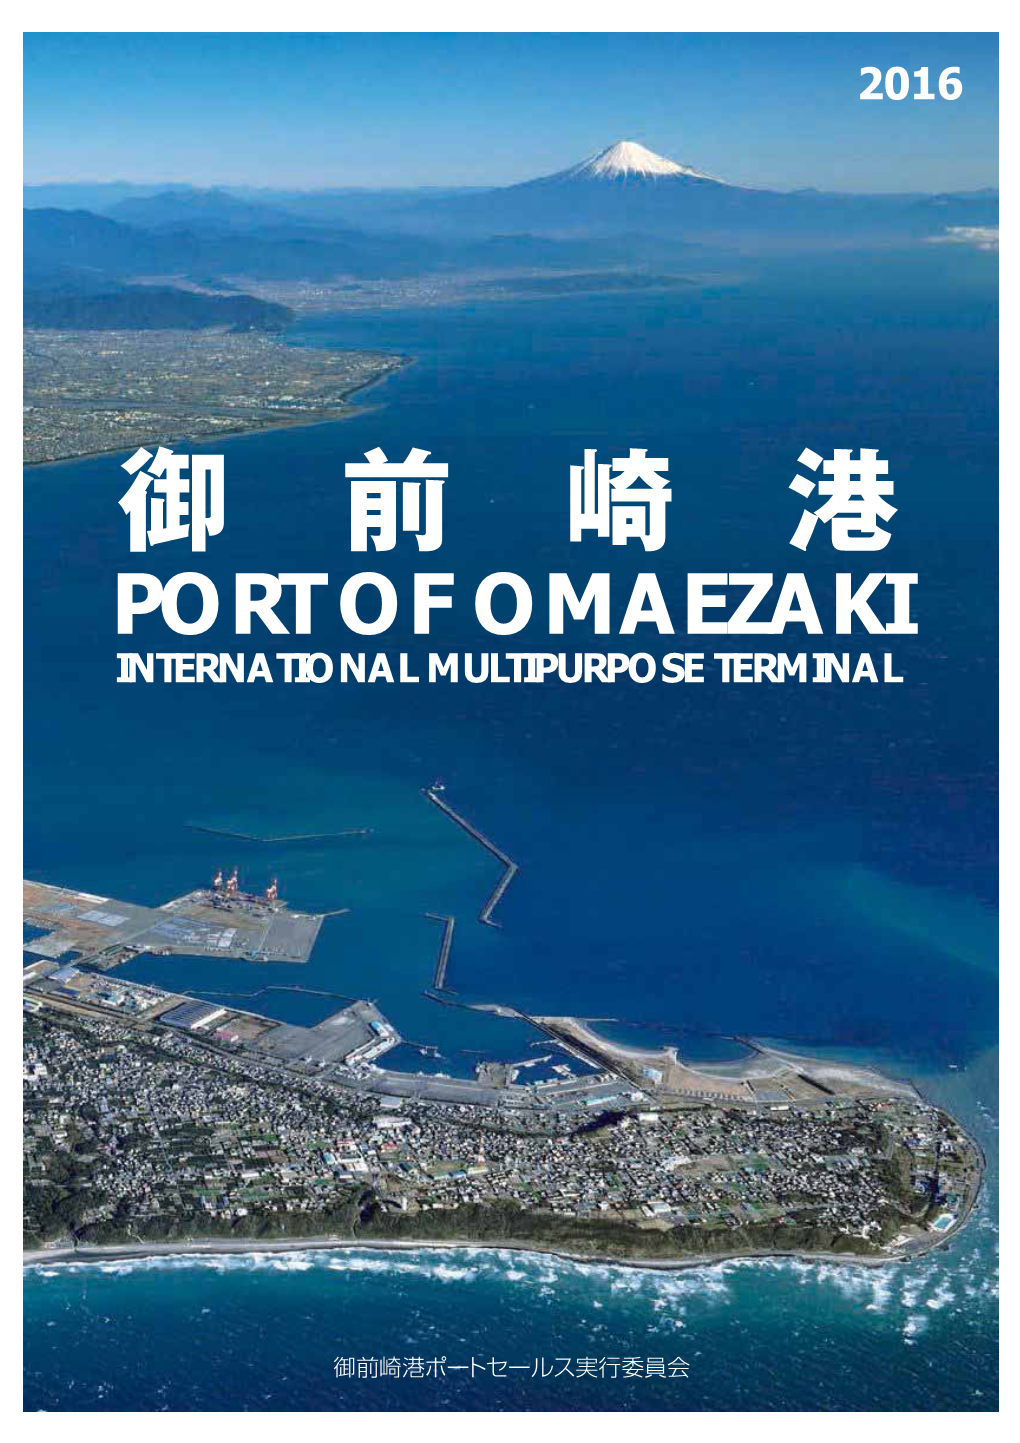 Port of Omaezaki in Tern a Tio N a L M Ultipurpo Se Term in a L Good Loc Ation At